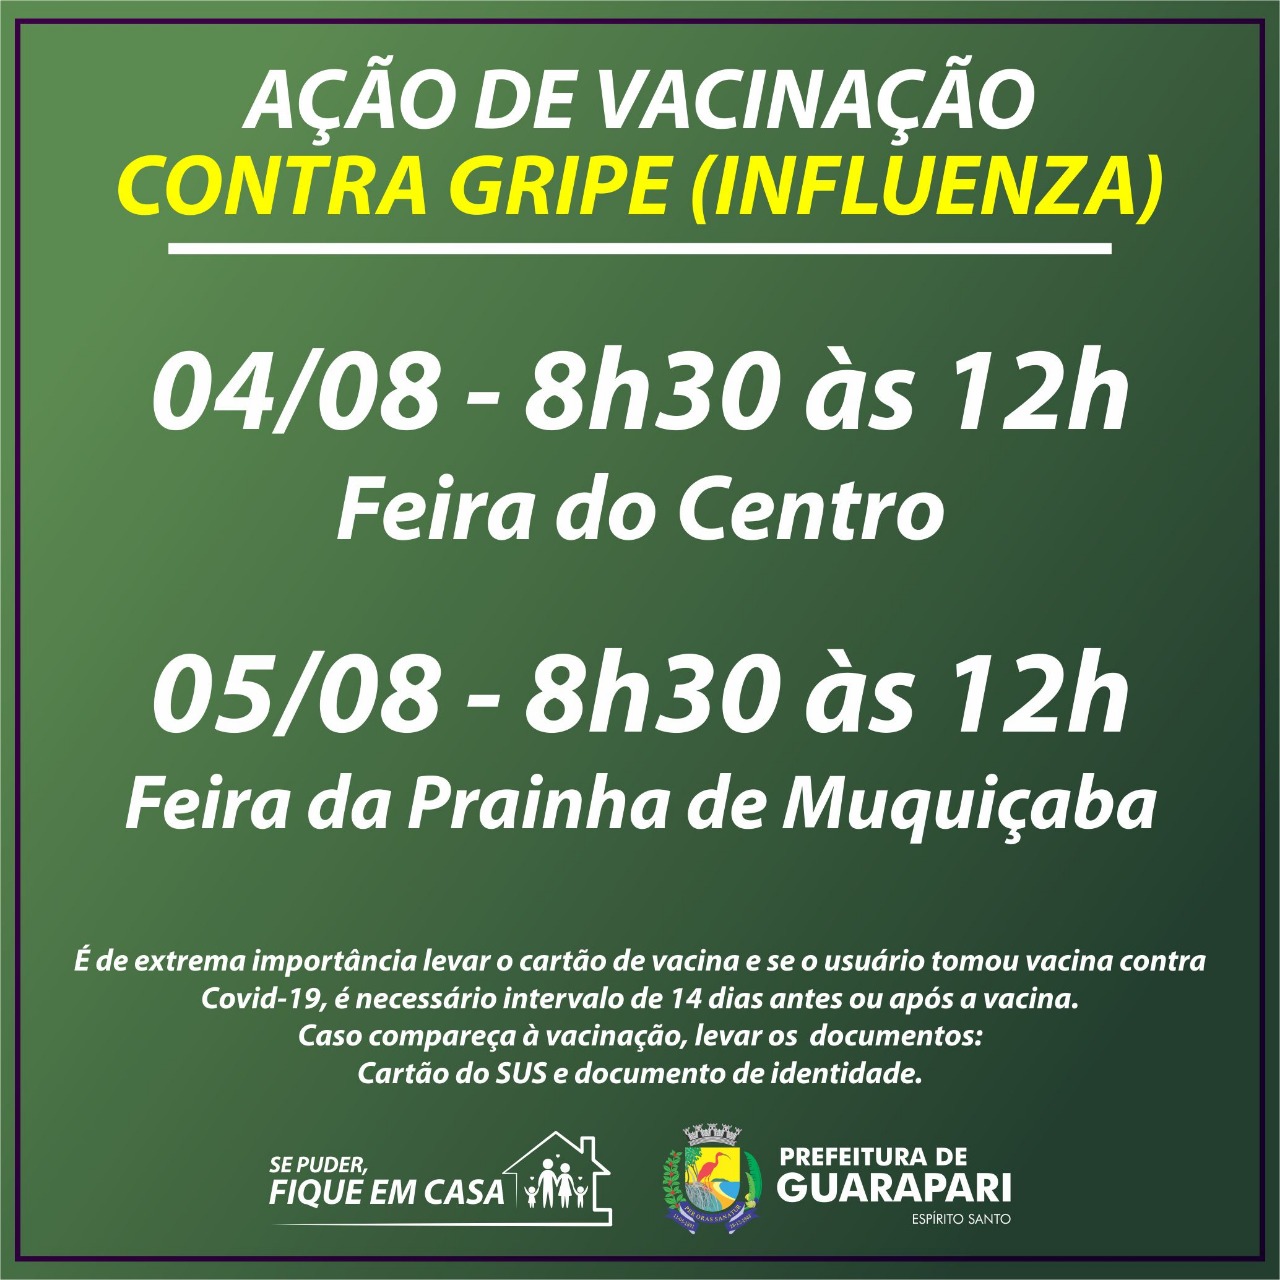 Prefeitura de Guarapari realiza ação de vacinação contra Influenza nas feiras livres do município